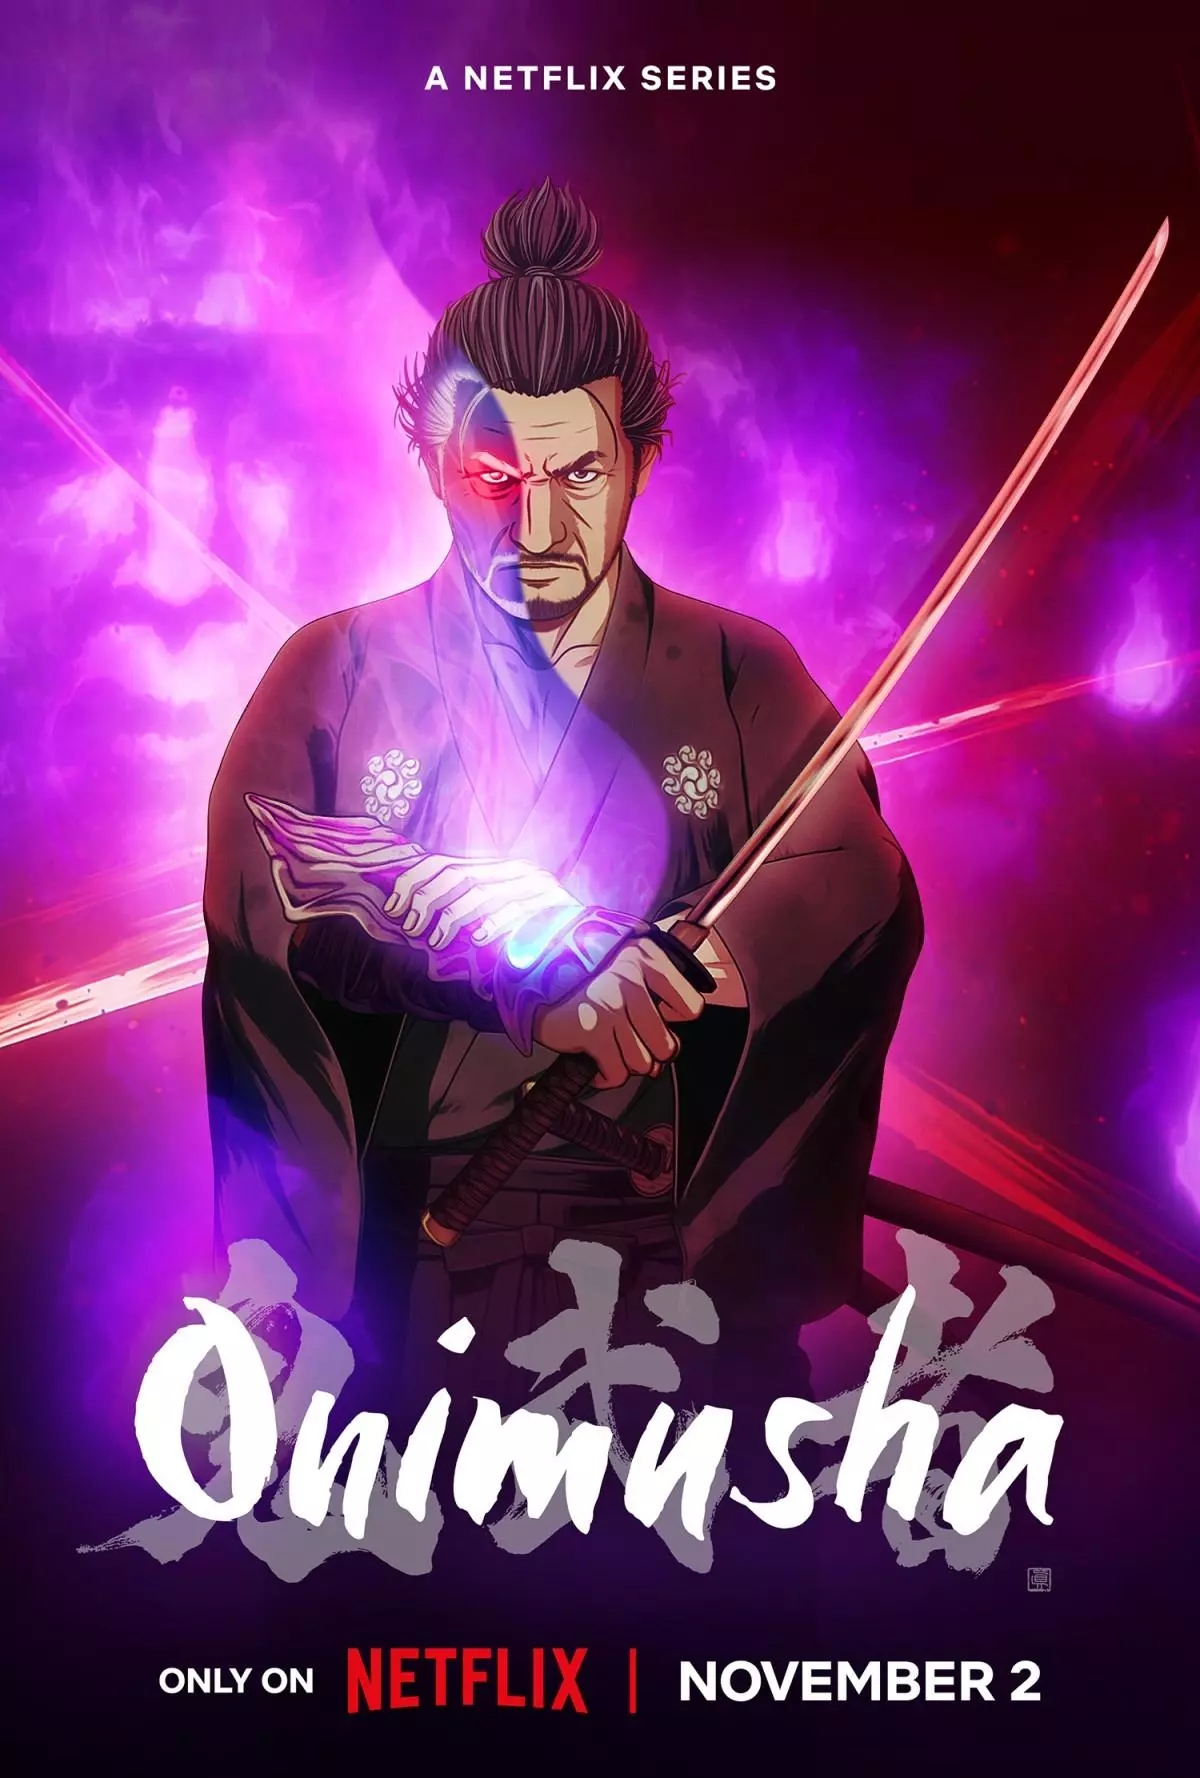 Onimusha โลกของนักรบอสูรในมุมมองที่แตกต่าง